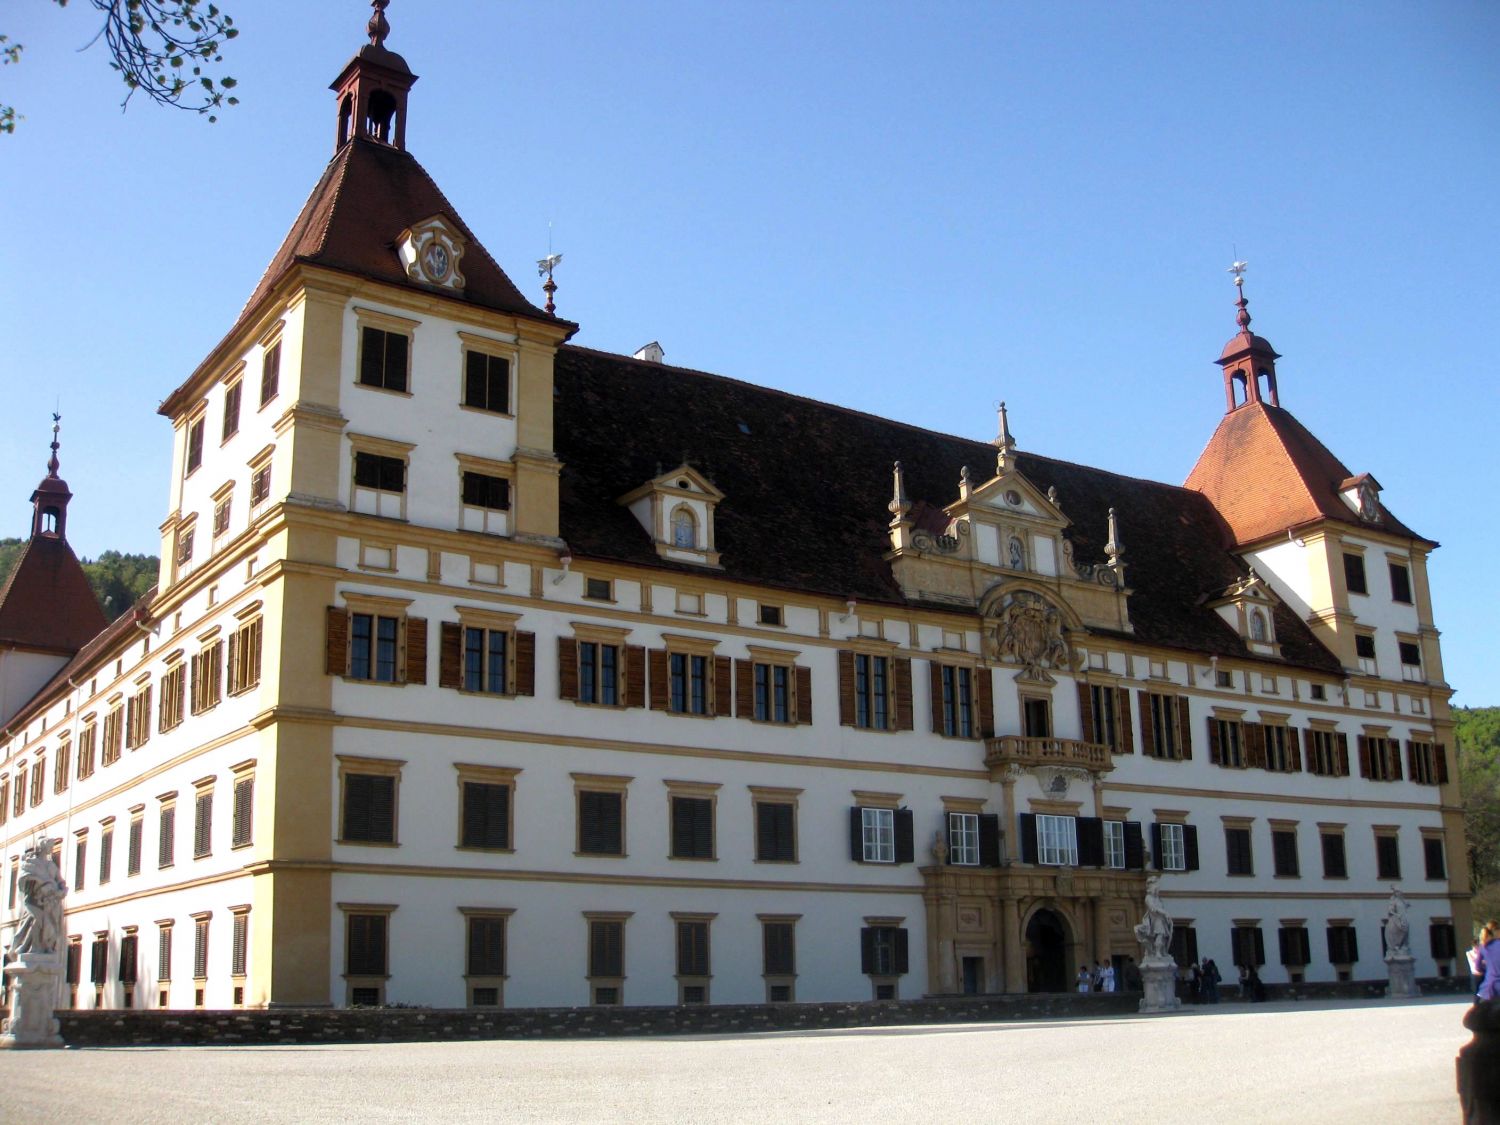 Schloss Eggenberg, Graz